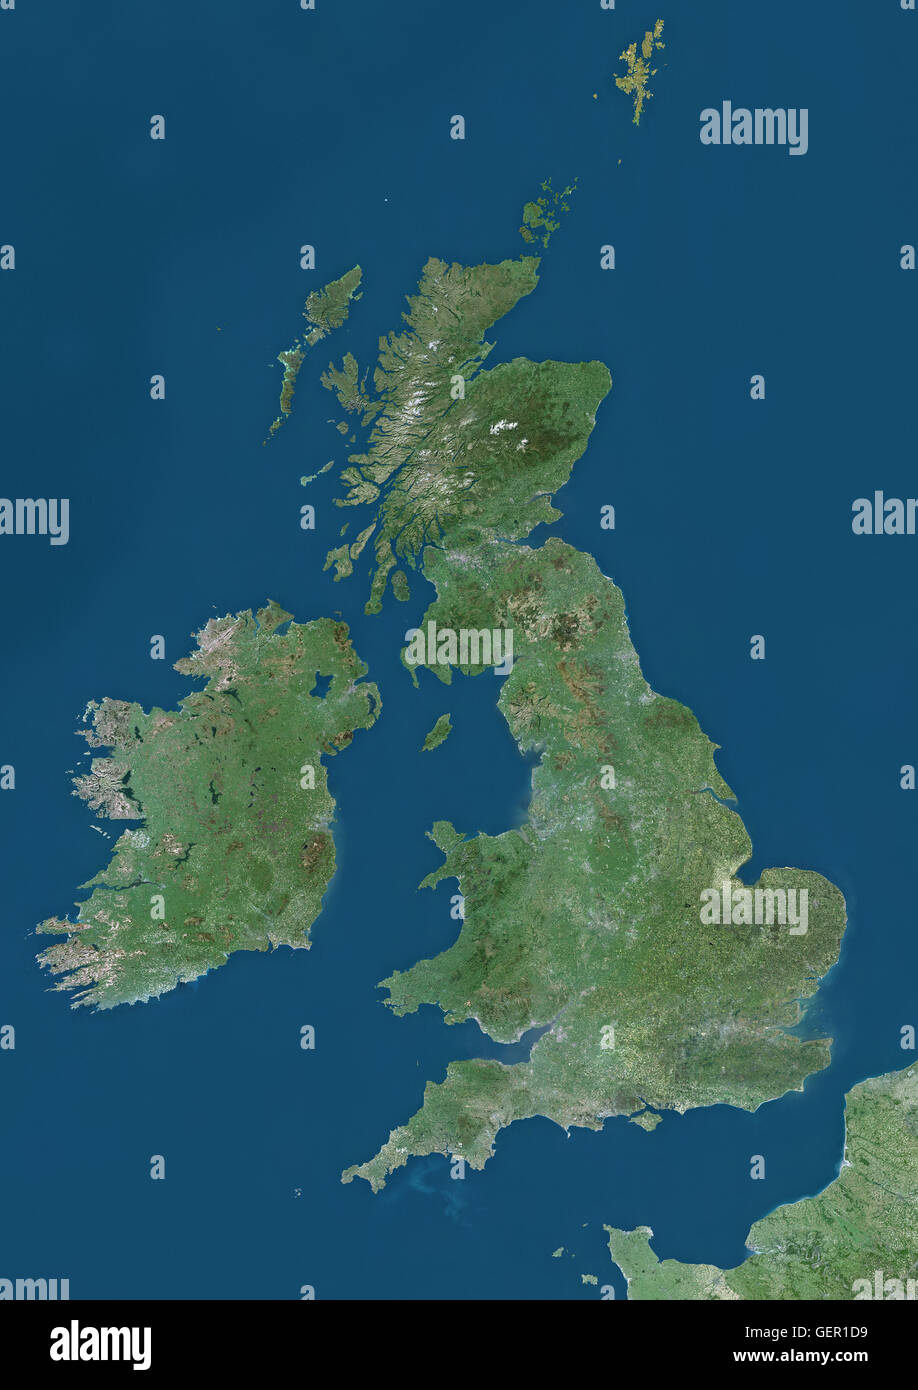 Satelliten-Ansicht der britischen Inseln, die das Vereinigte Königreich und Irland zeigt. Dieses Bild wurde aus Daten von Landsat-Satelliten erworben erstellt. Stockfoto